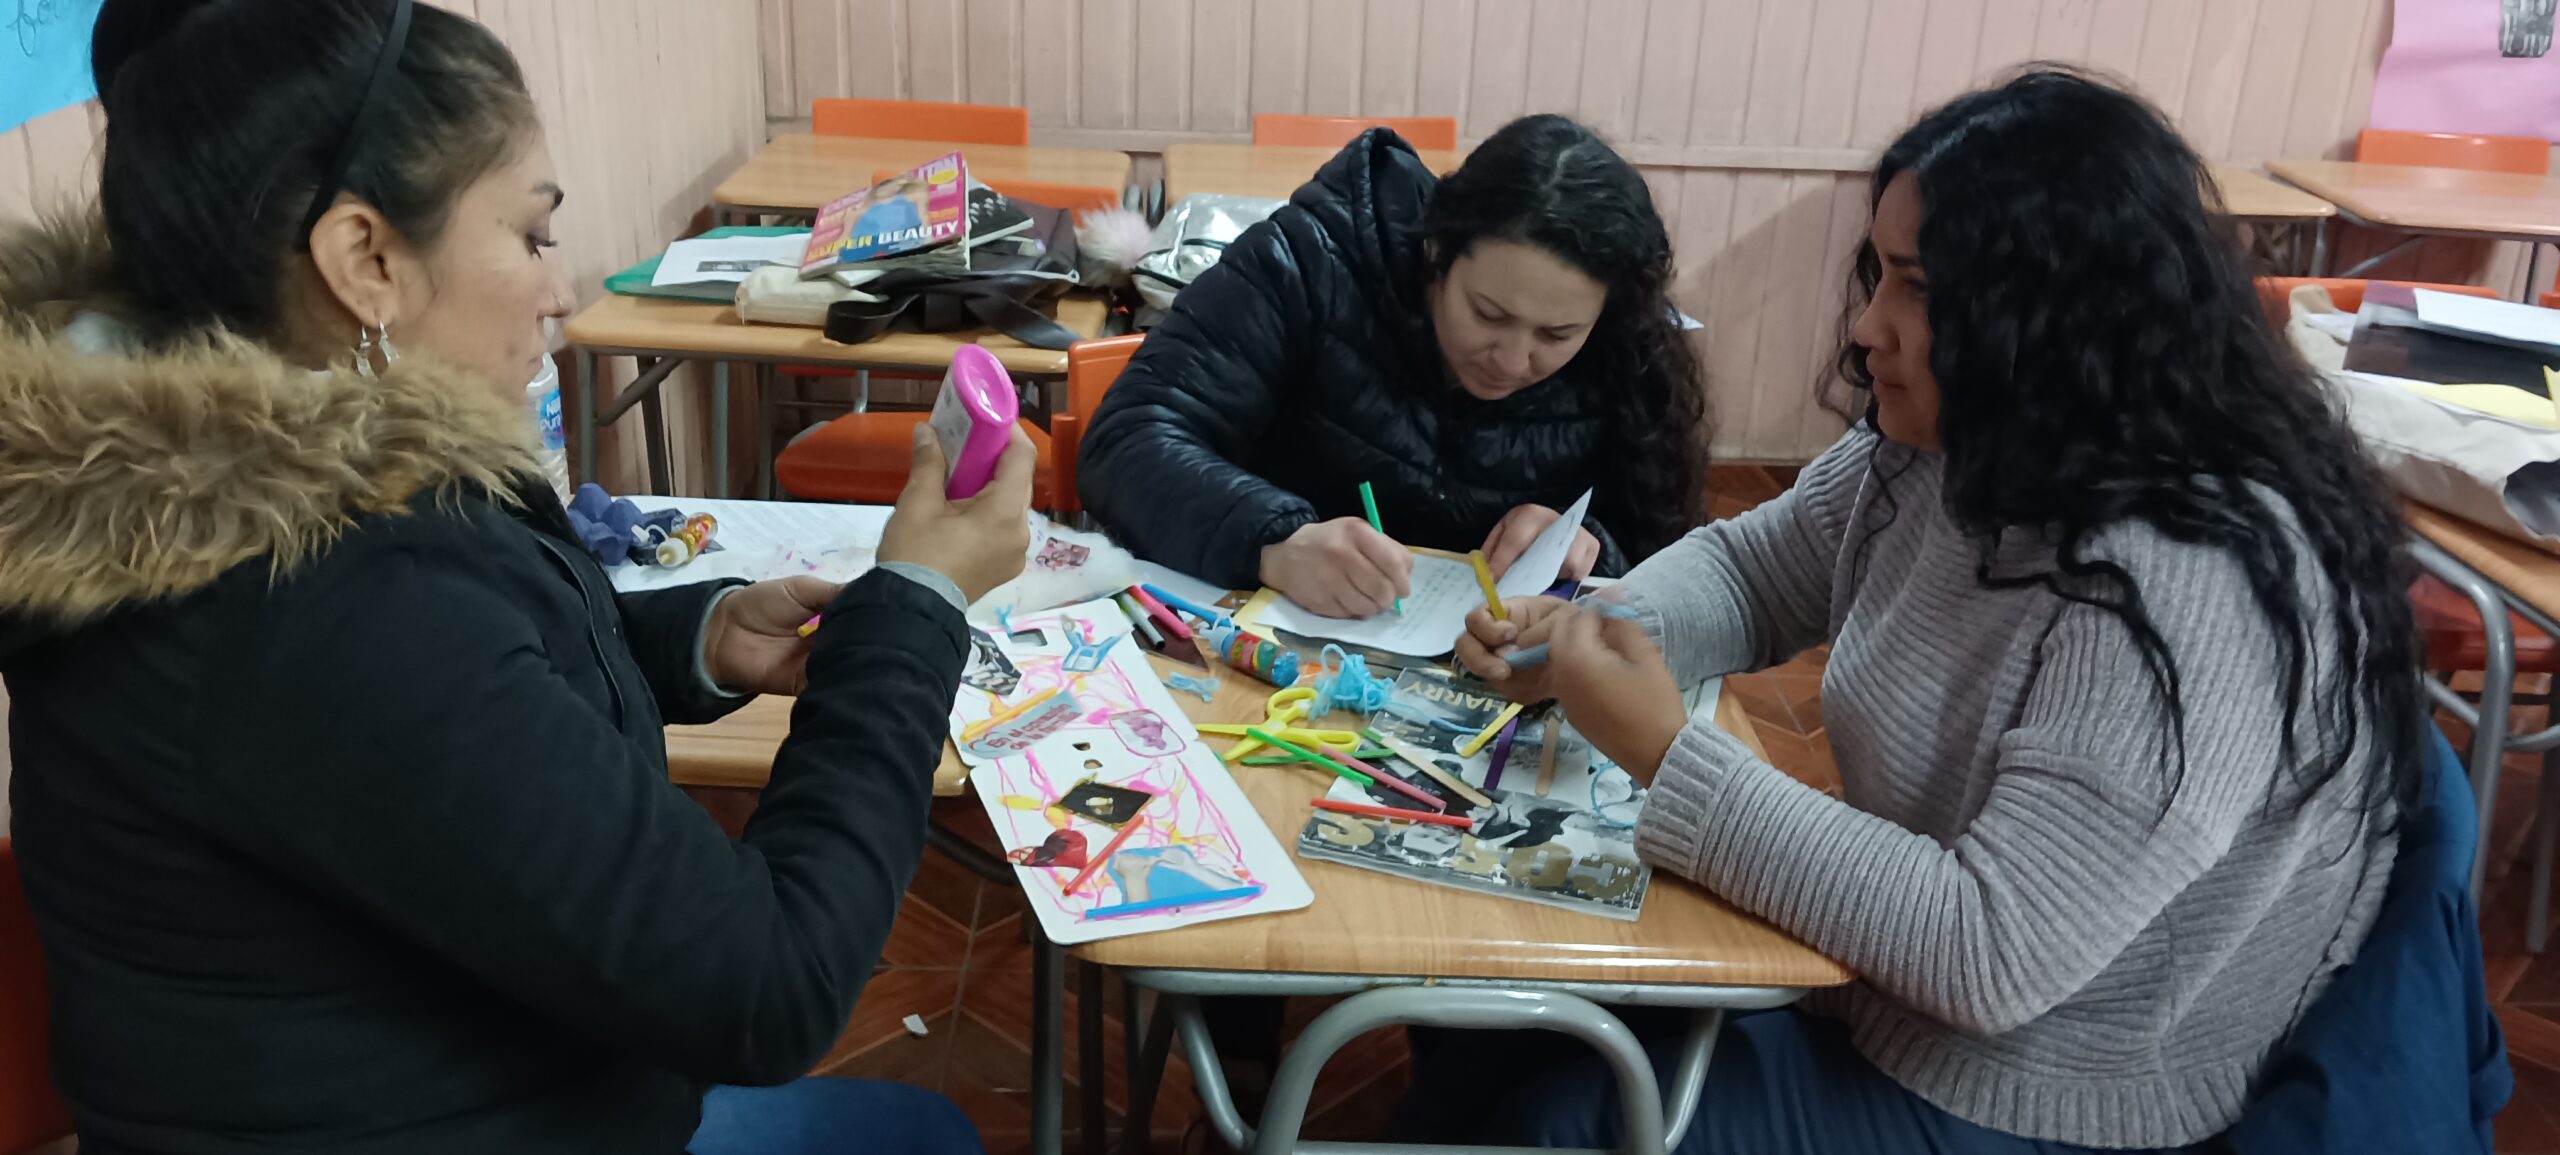 Grupo pequeño de mujeres sentadas en una sala de clases con materiales en sus manos